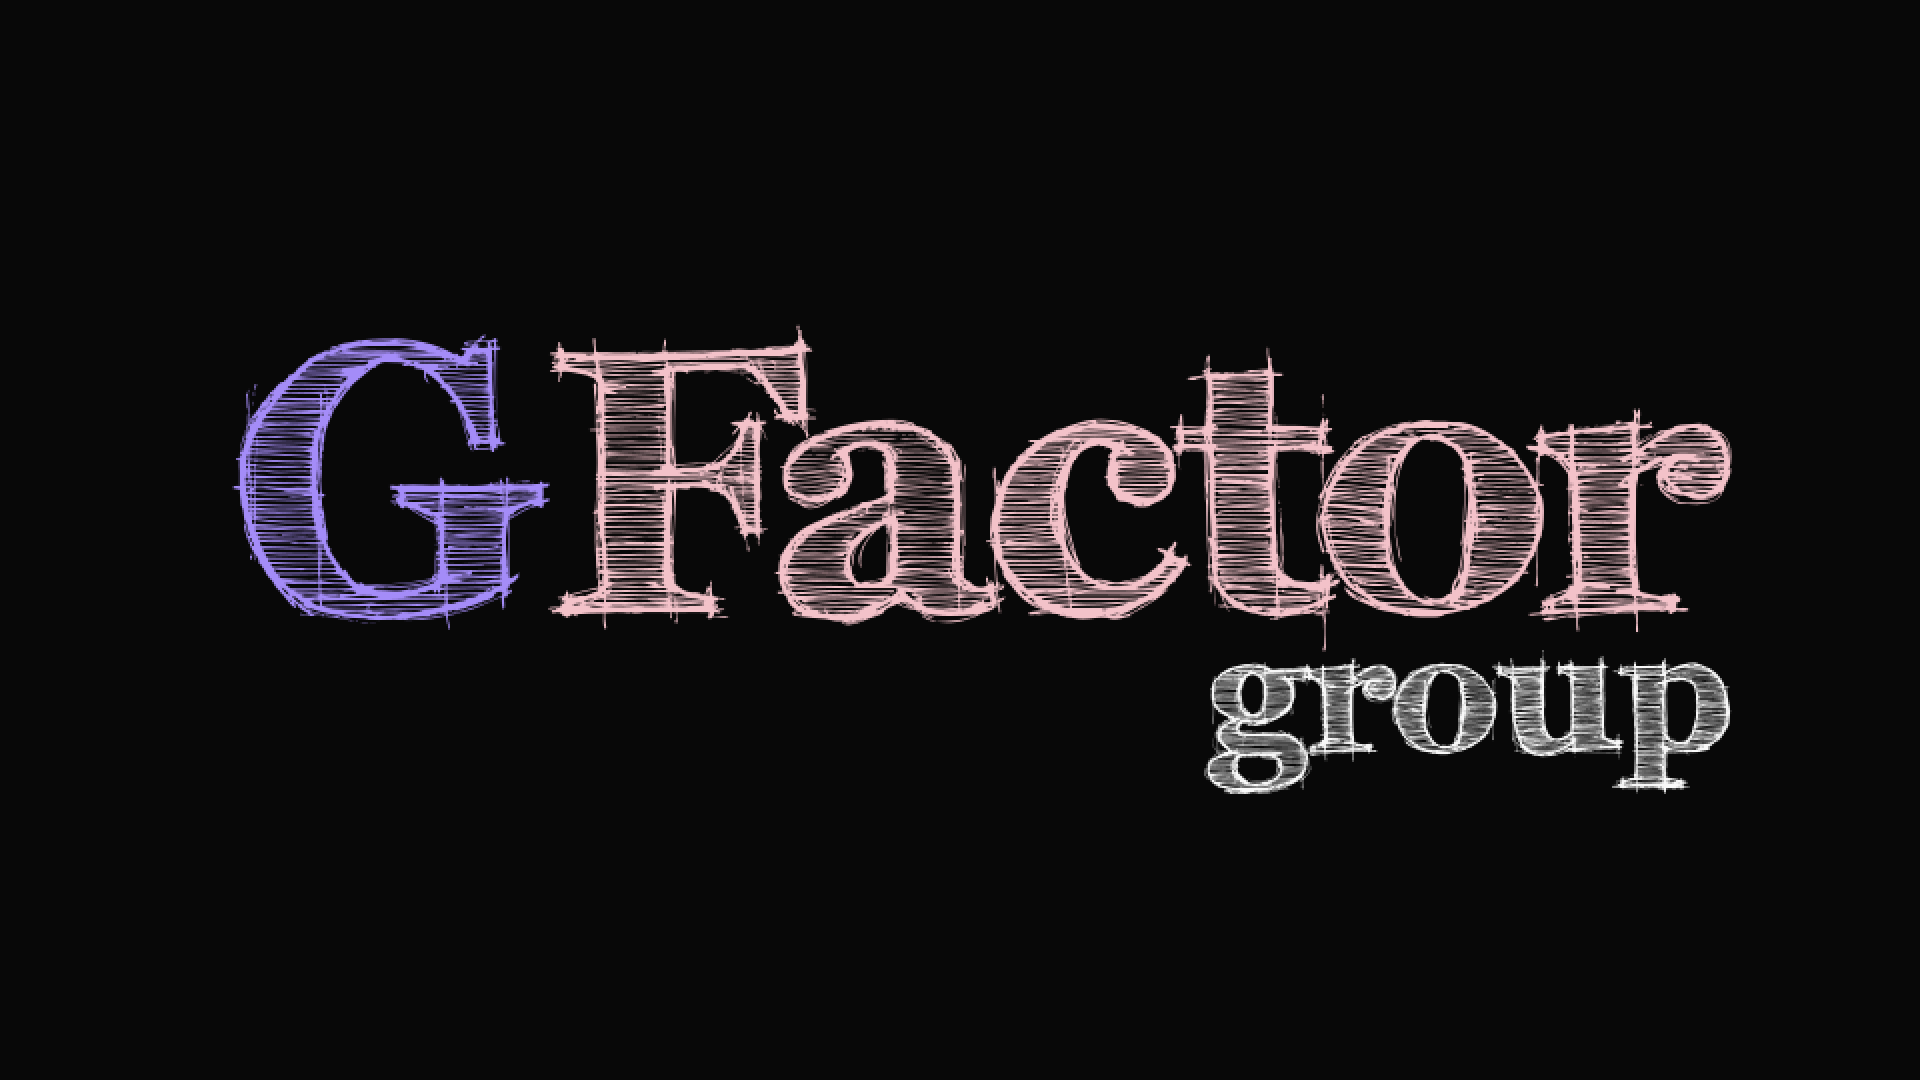 Το G-factor με την άρση των νέων μέτρων , αλλάζει διεύθυνση !